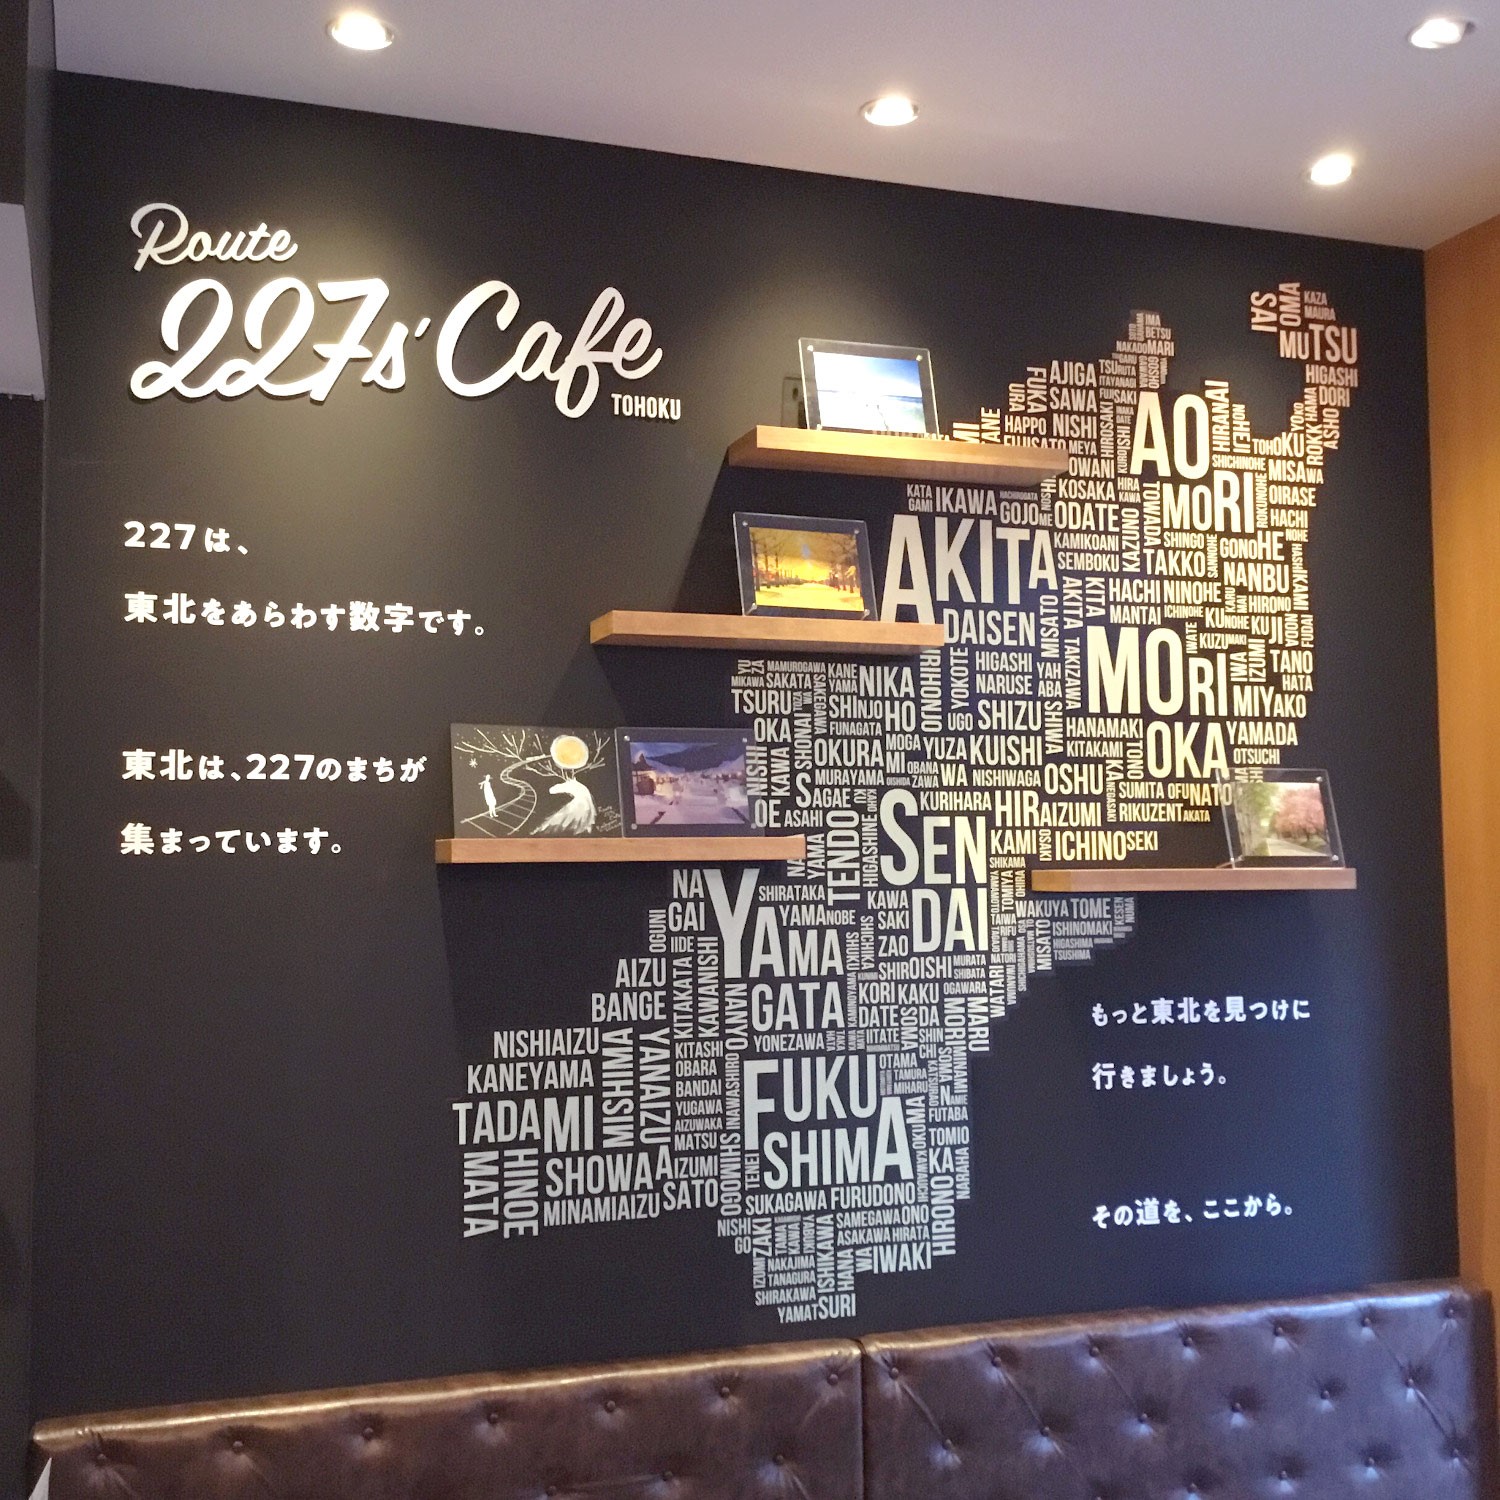 Route 227s’ Cafe TOHOKU